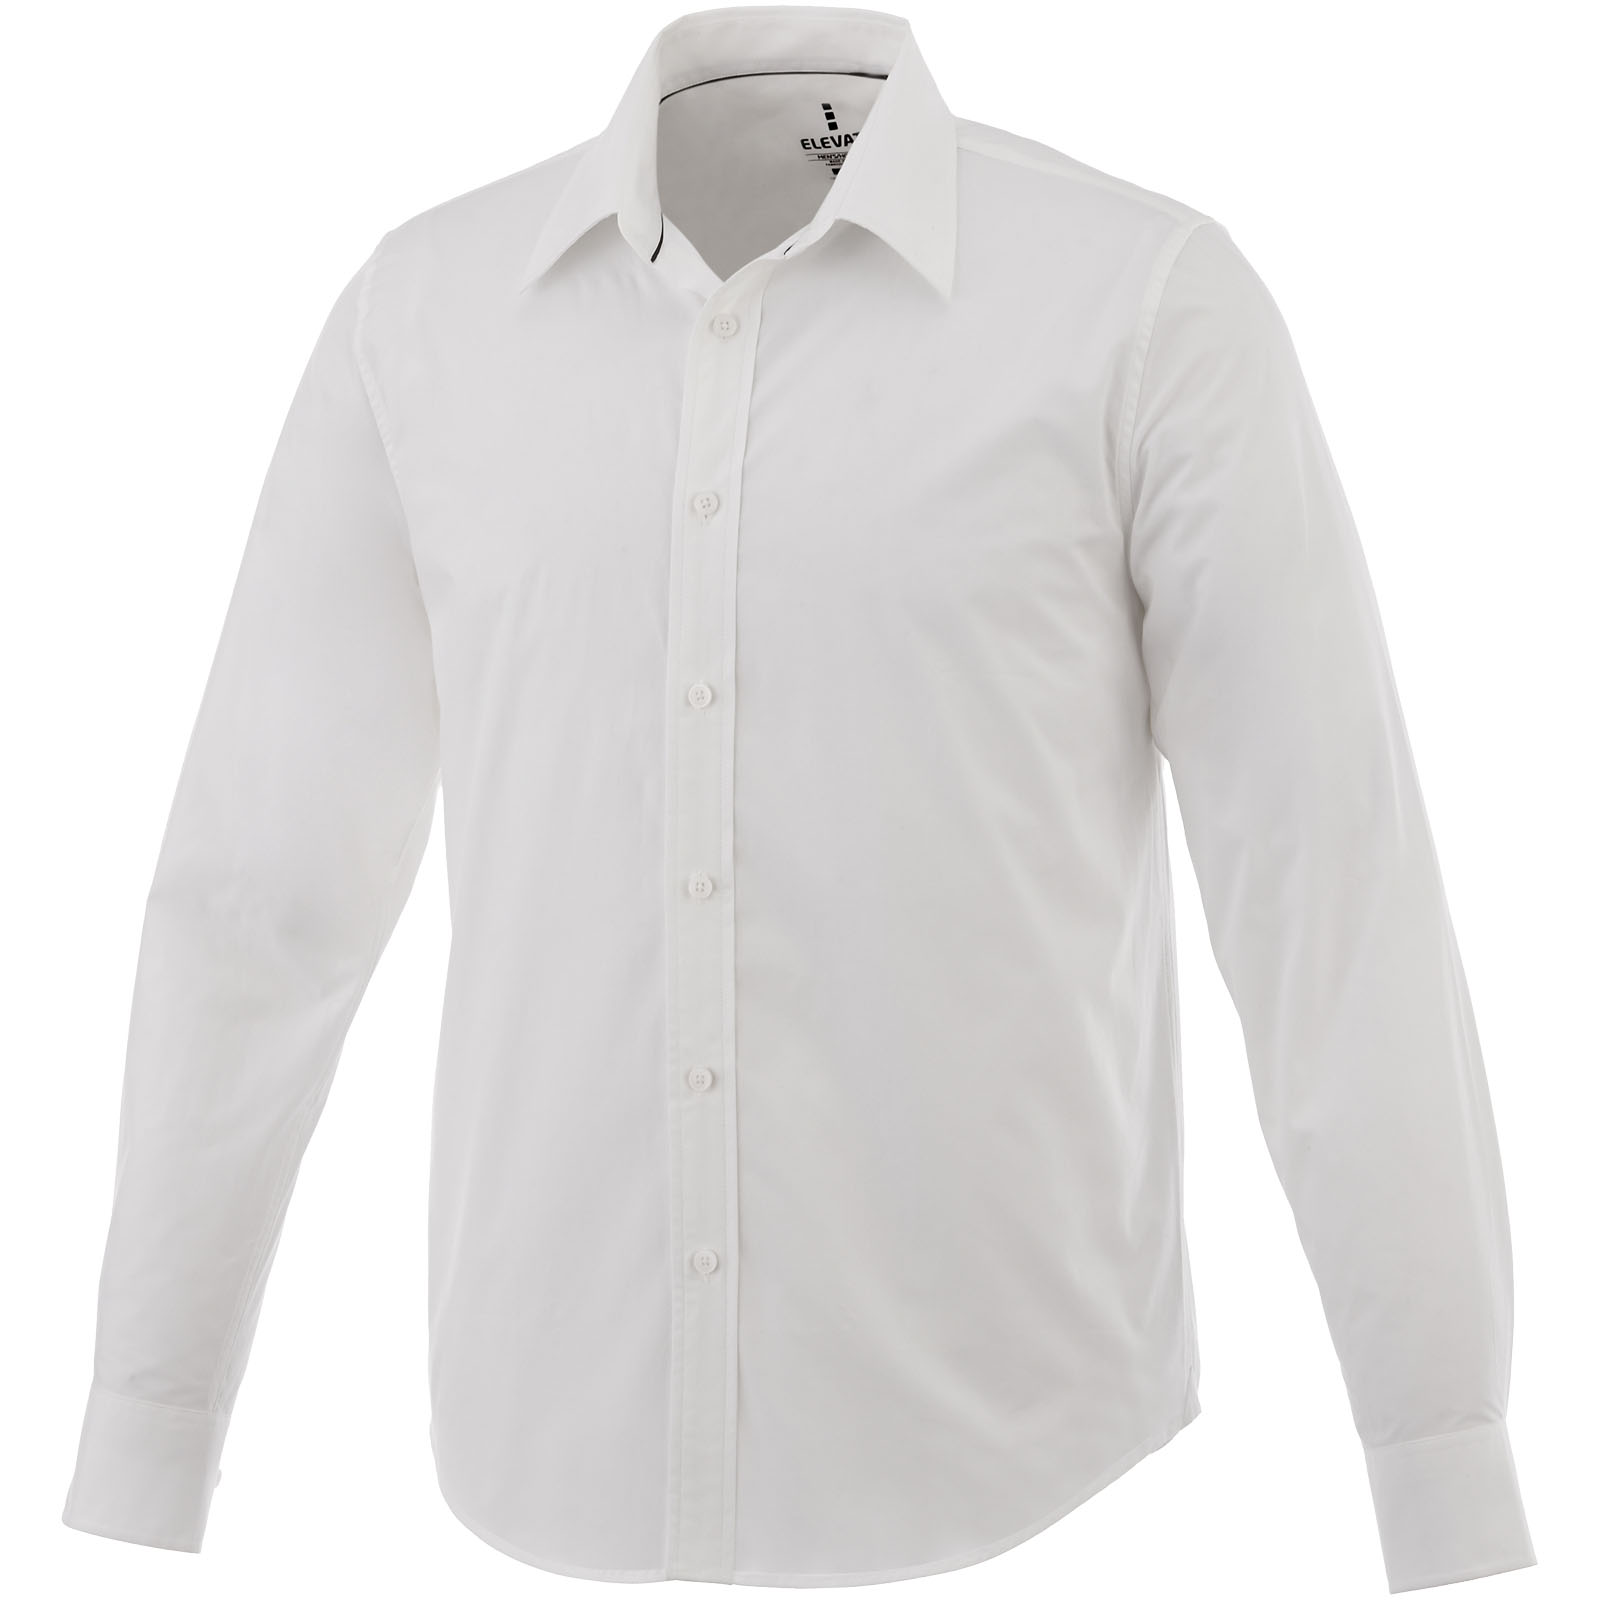 Clothing - Hamell long sleeve men's shirt